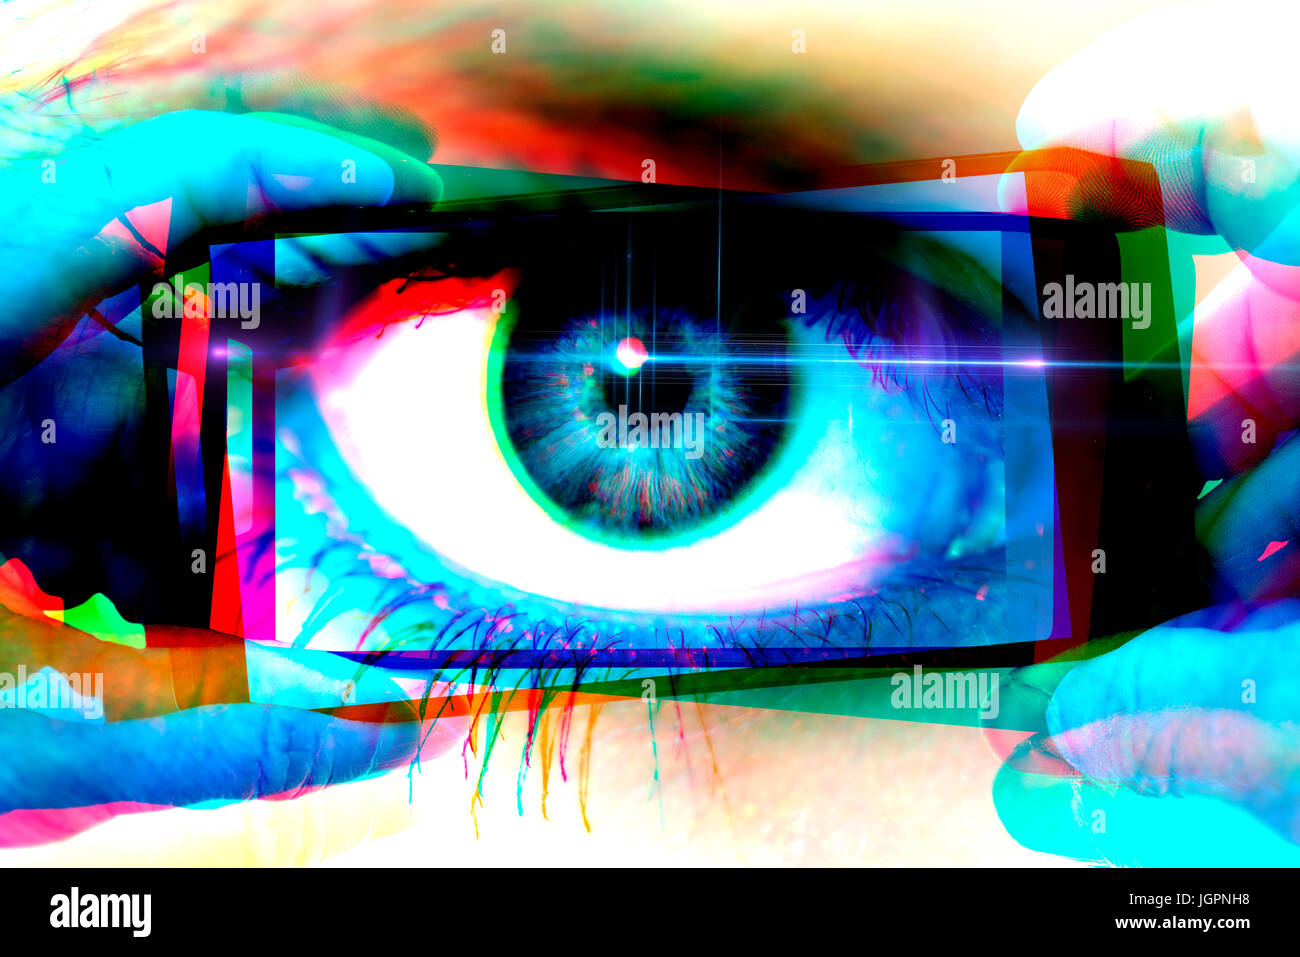 A woman's eye dans un appareil photo téléphone mobile, gawker Banque D'Images